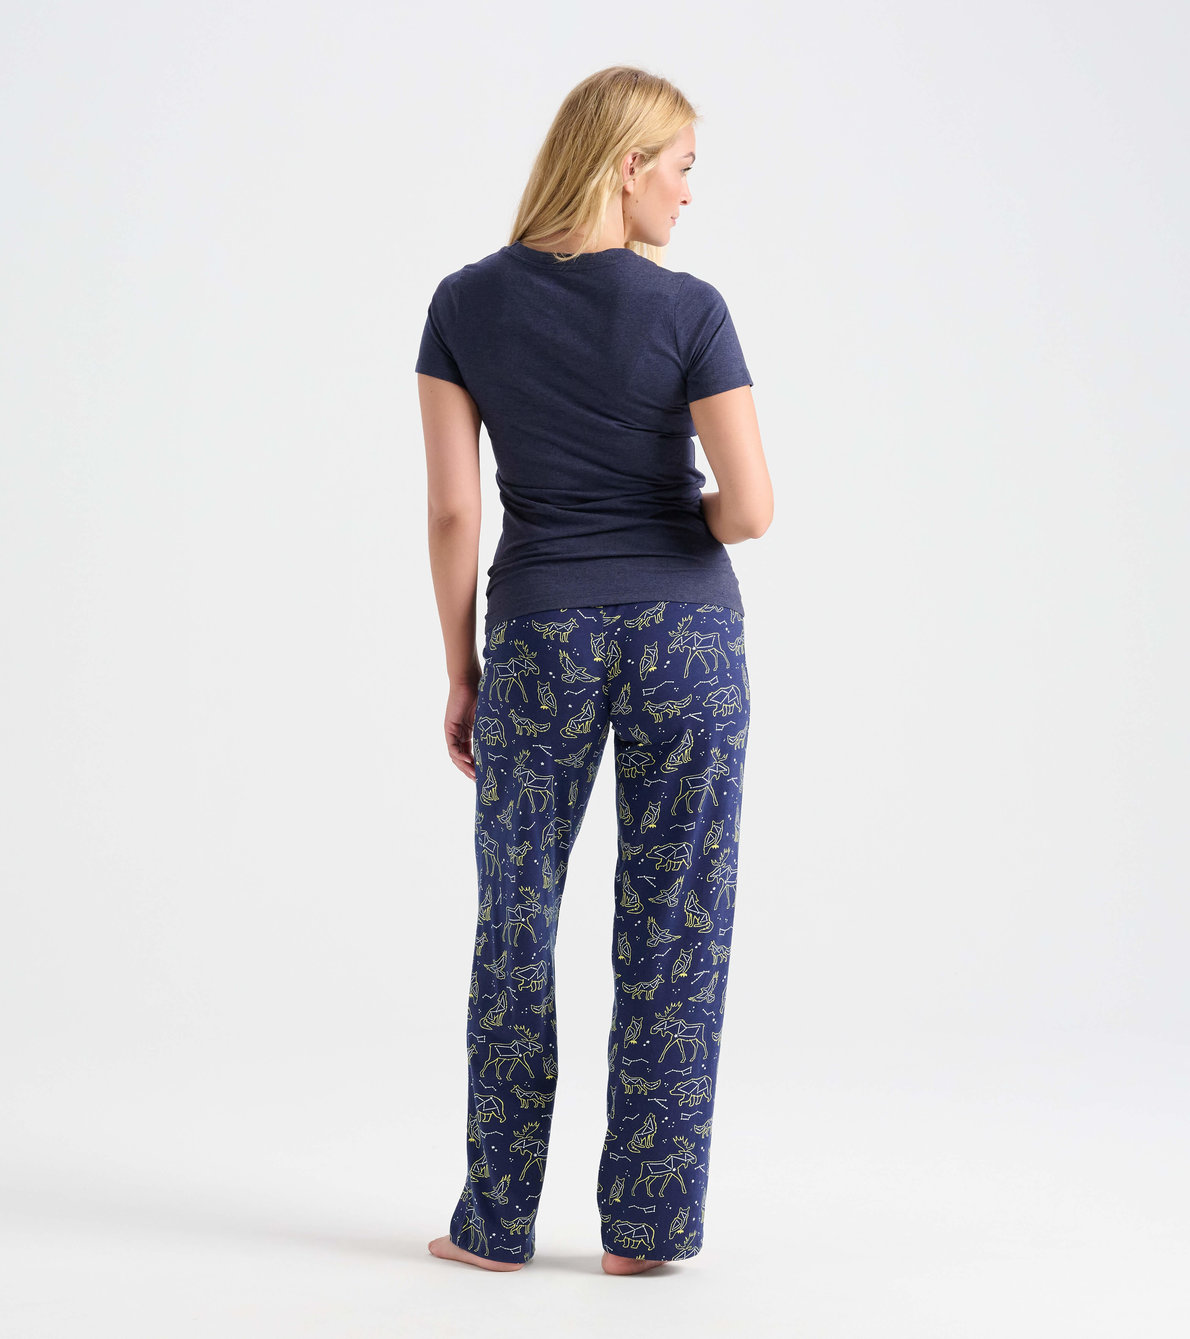 Agrandir l'image de Ensemble de pyjama t-shirt et pantalon interchangeables pour femme - Constellations d’animaux « Stargazer »